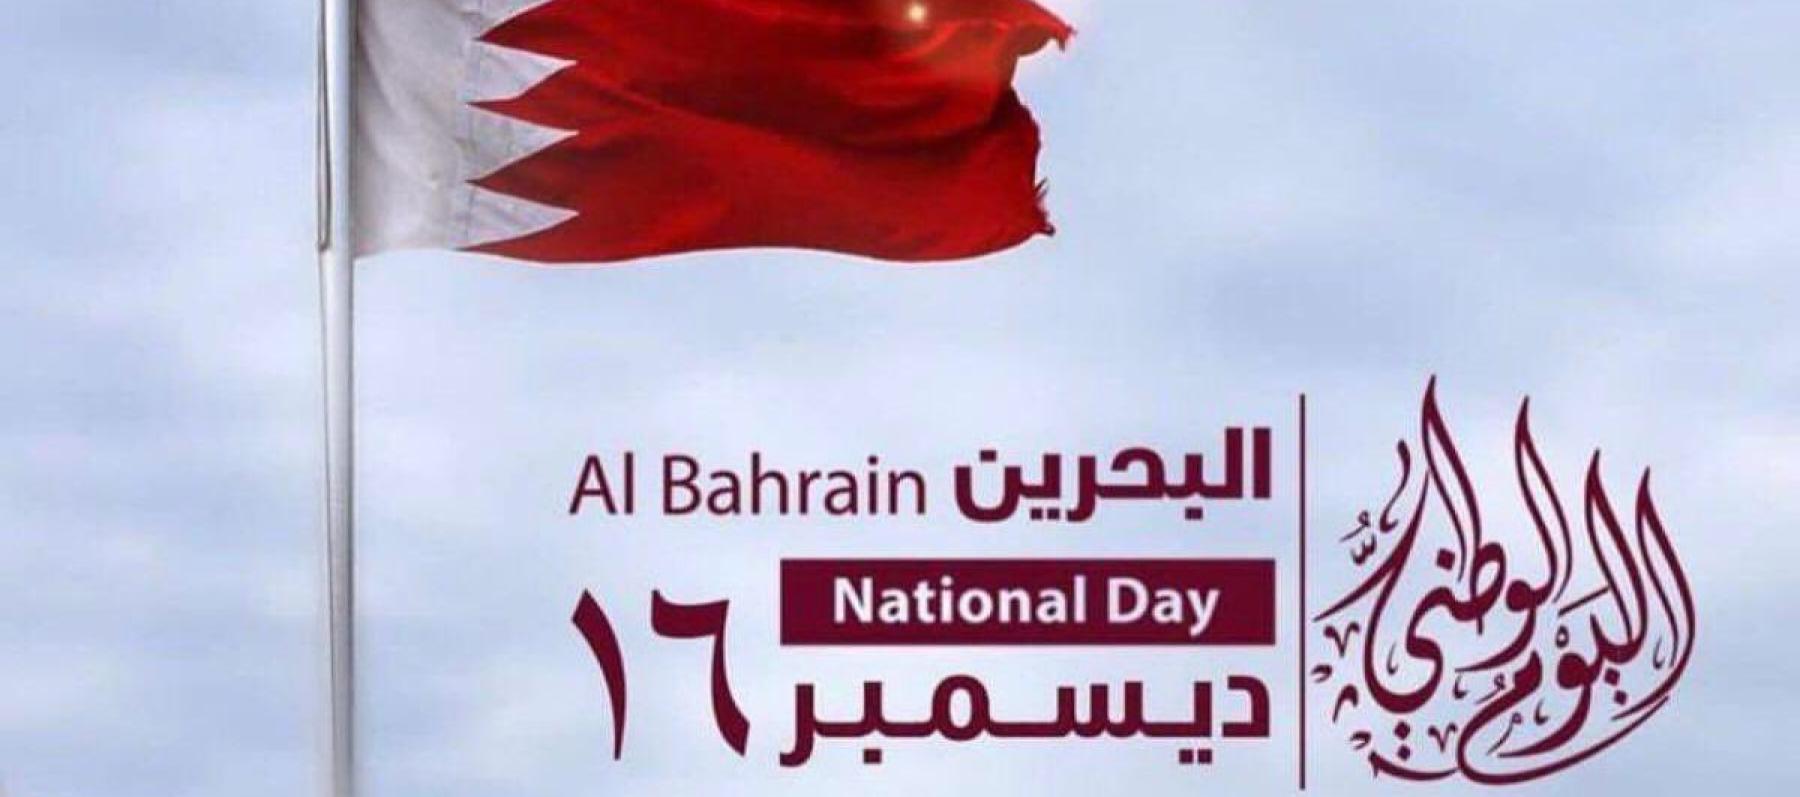 اليوم الوطني البحريني 